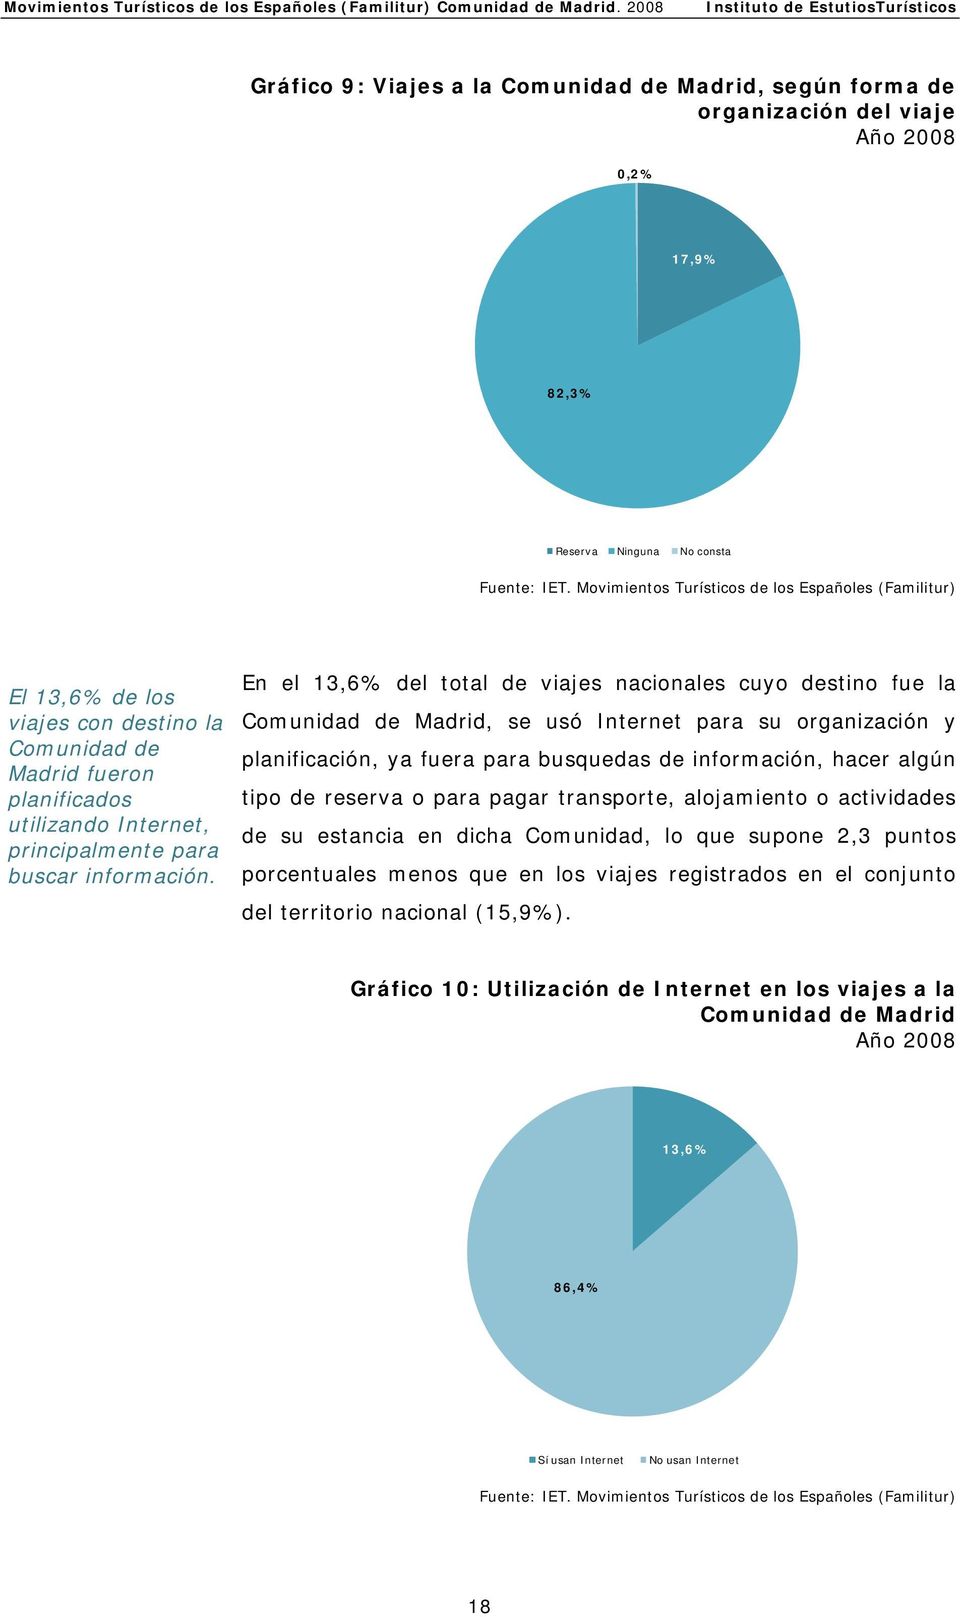 En el 13,6% del total de viajes nacionales cuyo destino fue la Comunidad de Madrid, se usó Internet para su organización y planificación, ya fuera para busquedas de información, hacer algún tipo de